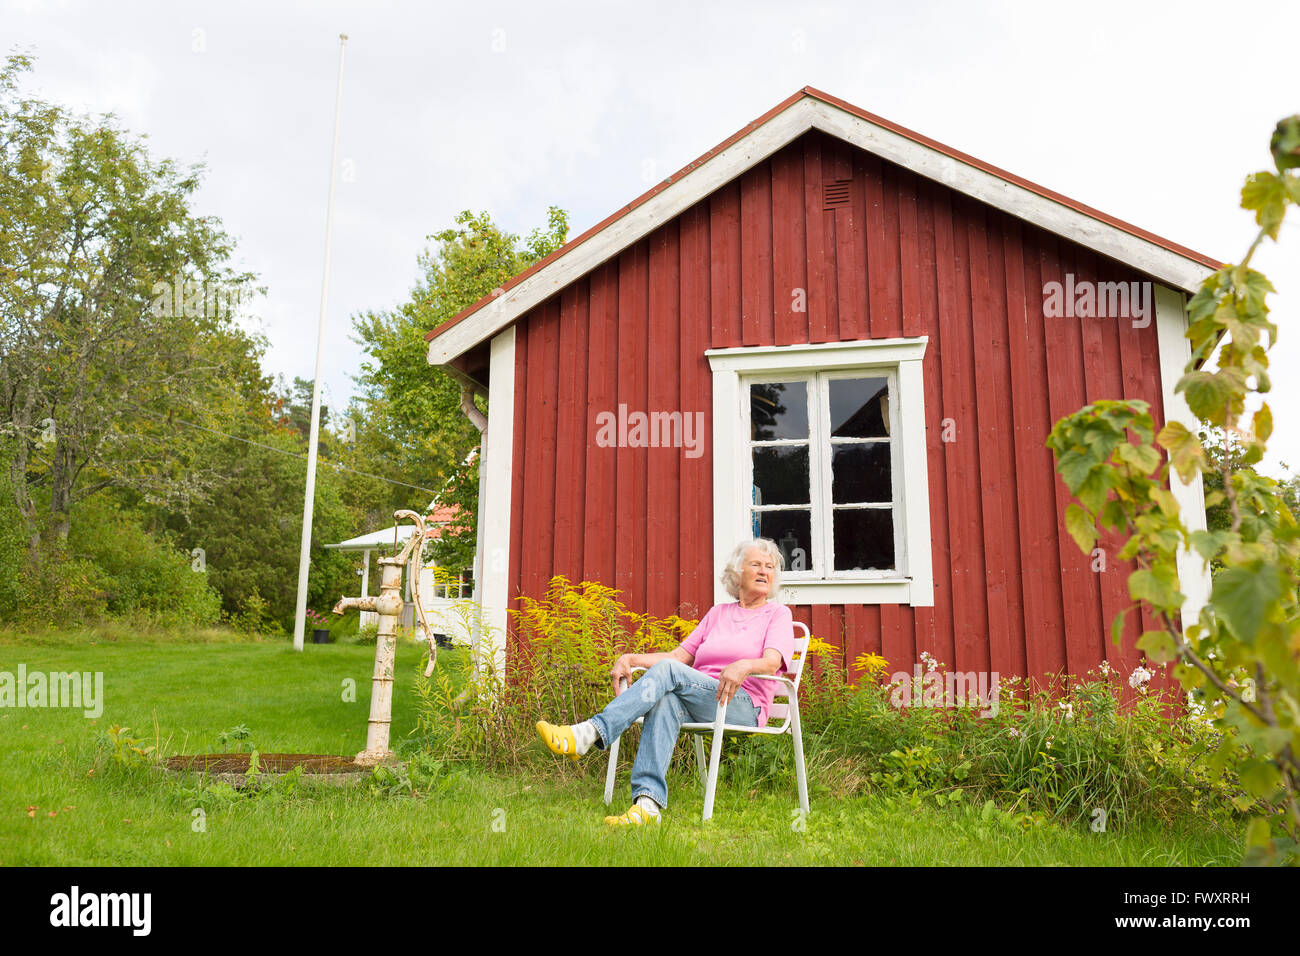 Suecia, Ostergotland, Finspang, mujer Senior en la silla relajante al aire libre Foto de stock